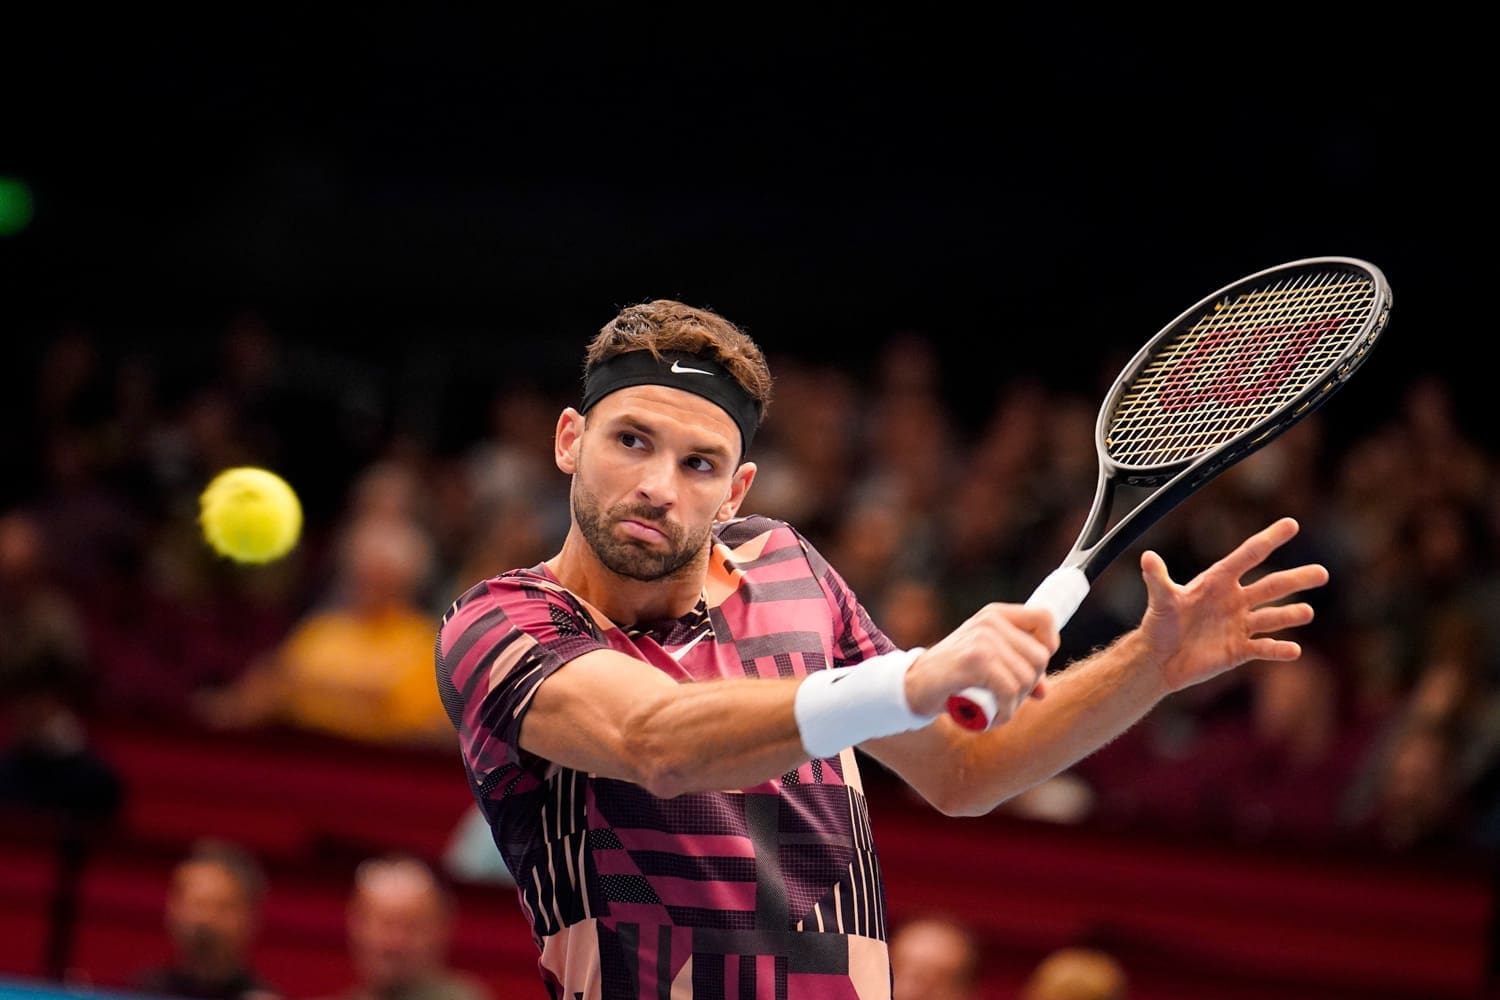 Tennispieler Grigor Dimitrov während dem Schlag mit Ball im Bild